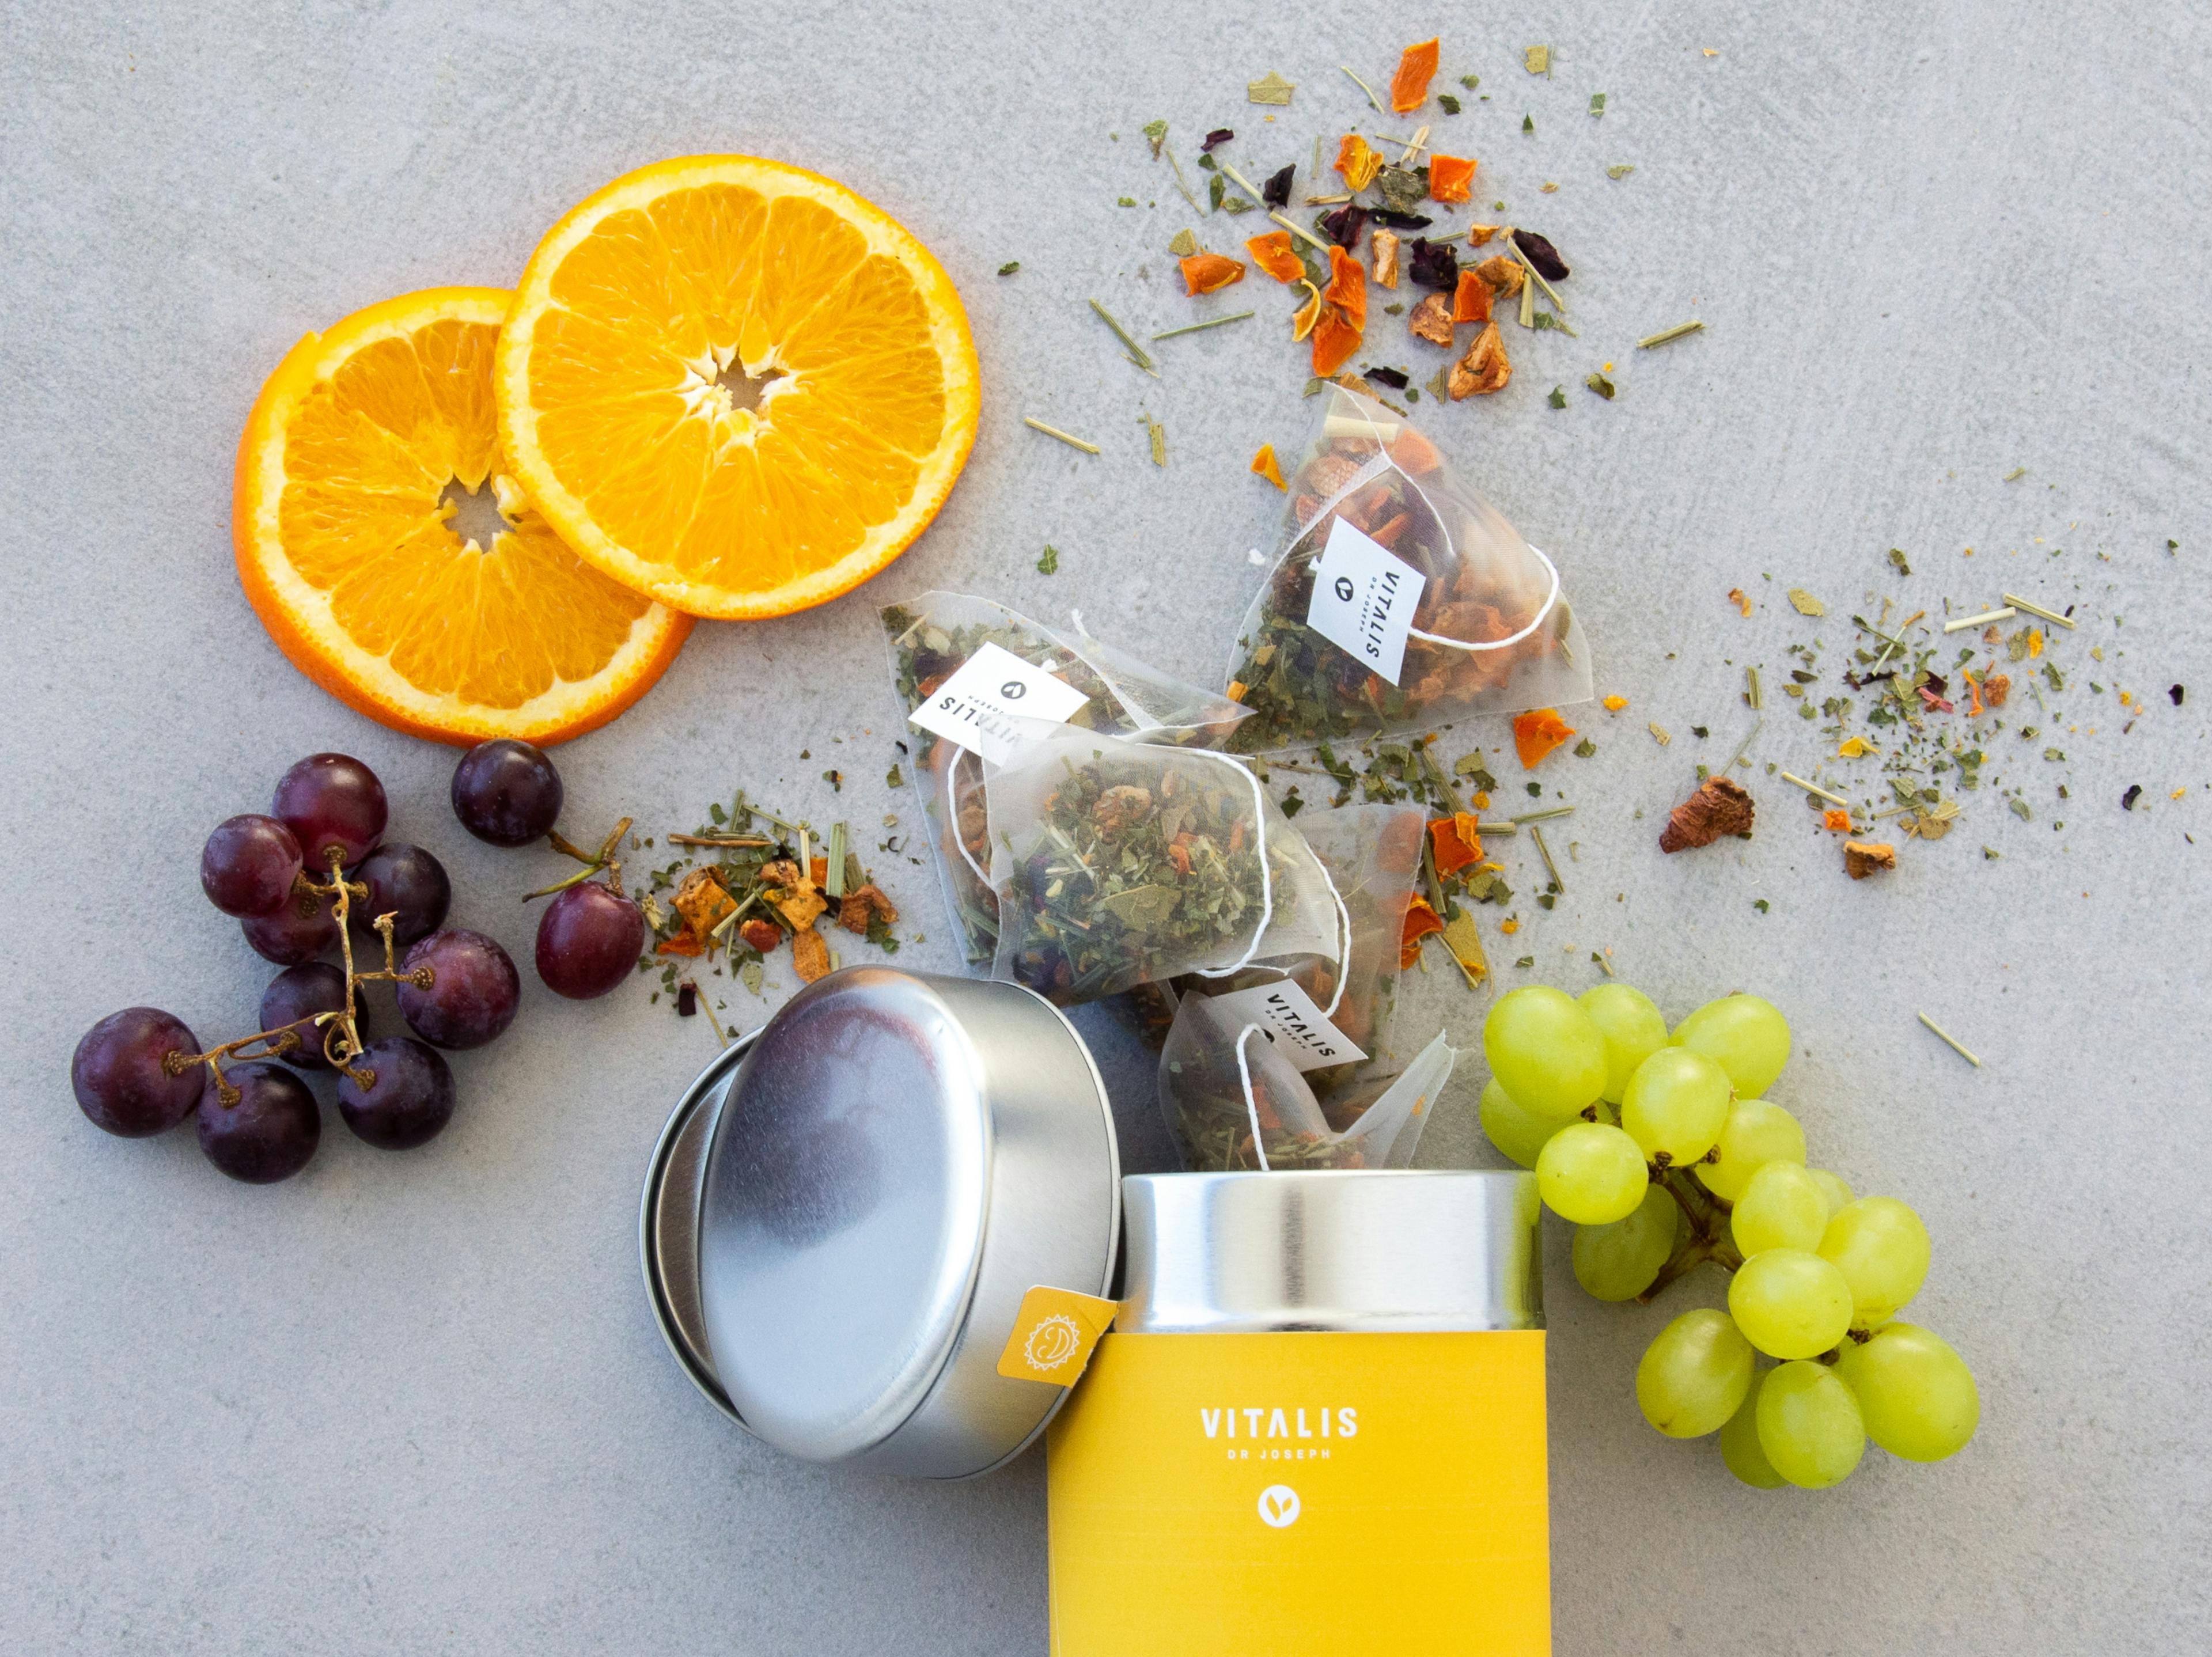 Produktfoto eines Vitalis Dr Joseph Tees platziert mit den enthaltenen Zutaten Orange und Traube © gobiq